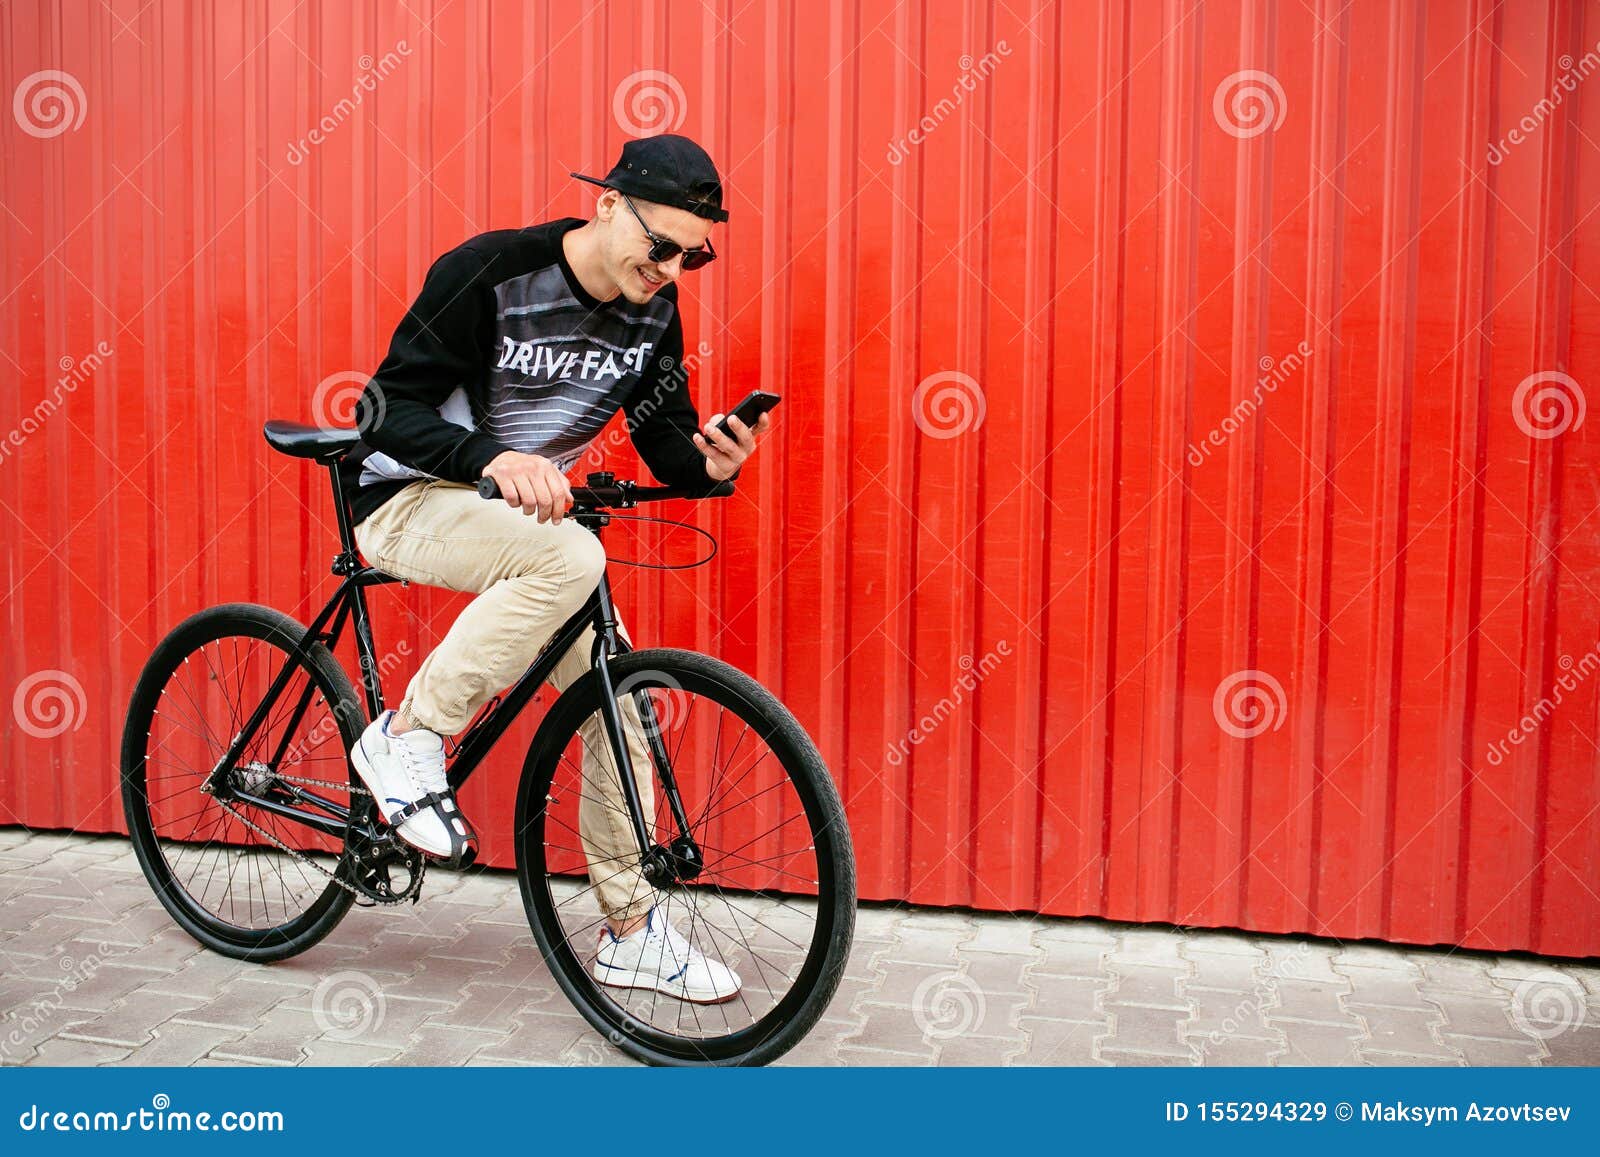 Мальчик сидит на велосипеде. Мужчина сидит на велосипеде фото.